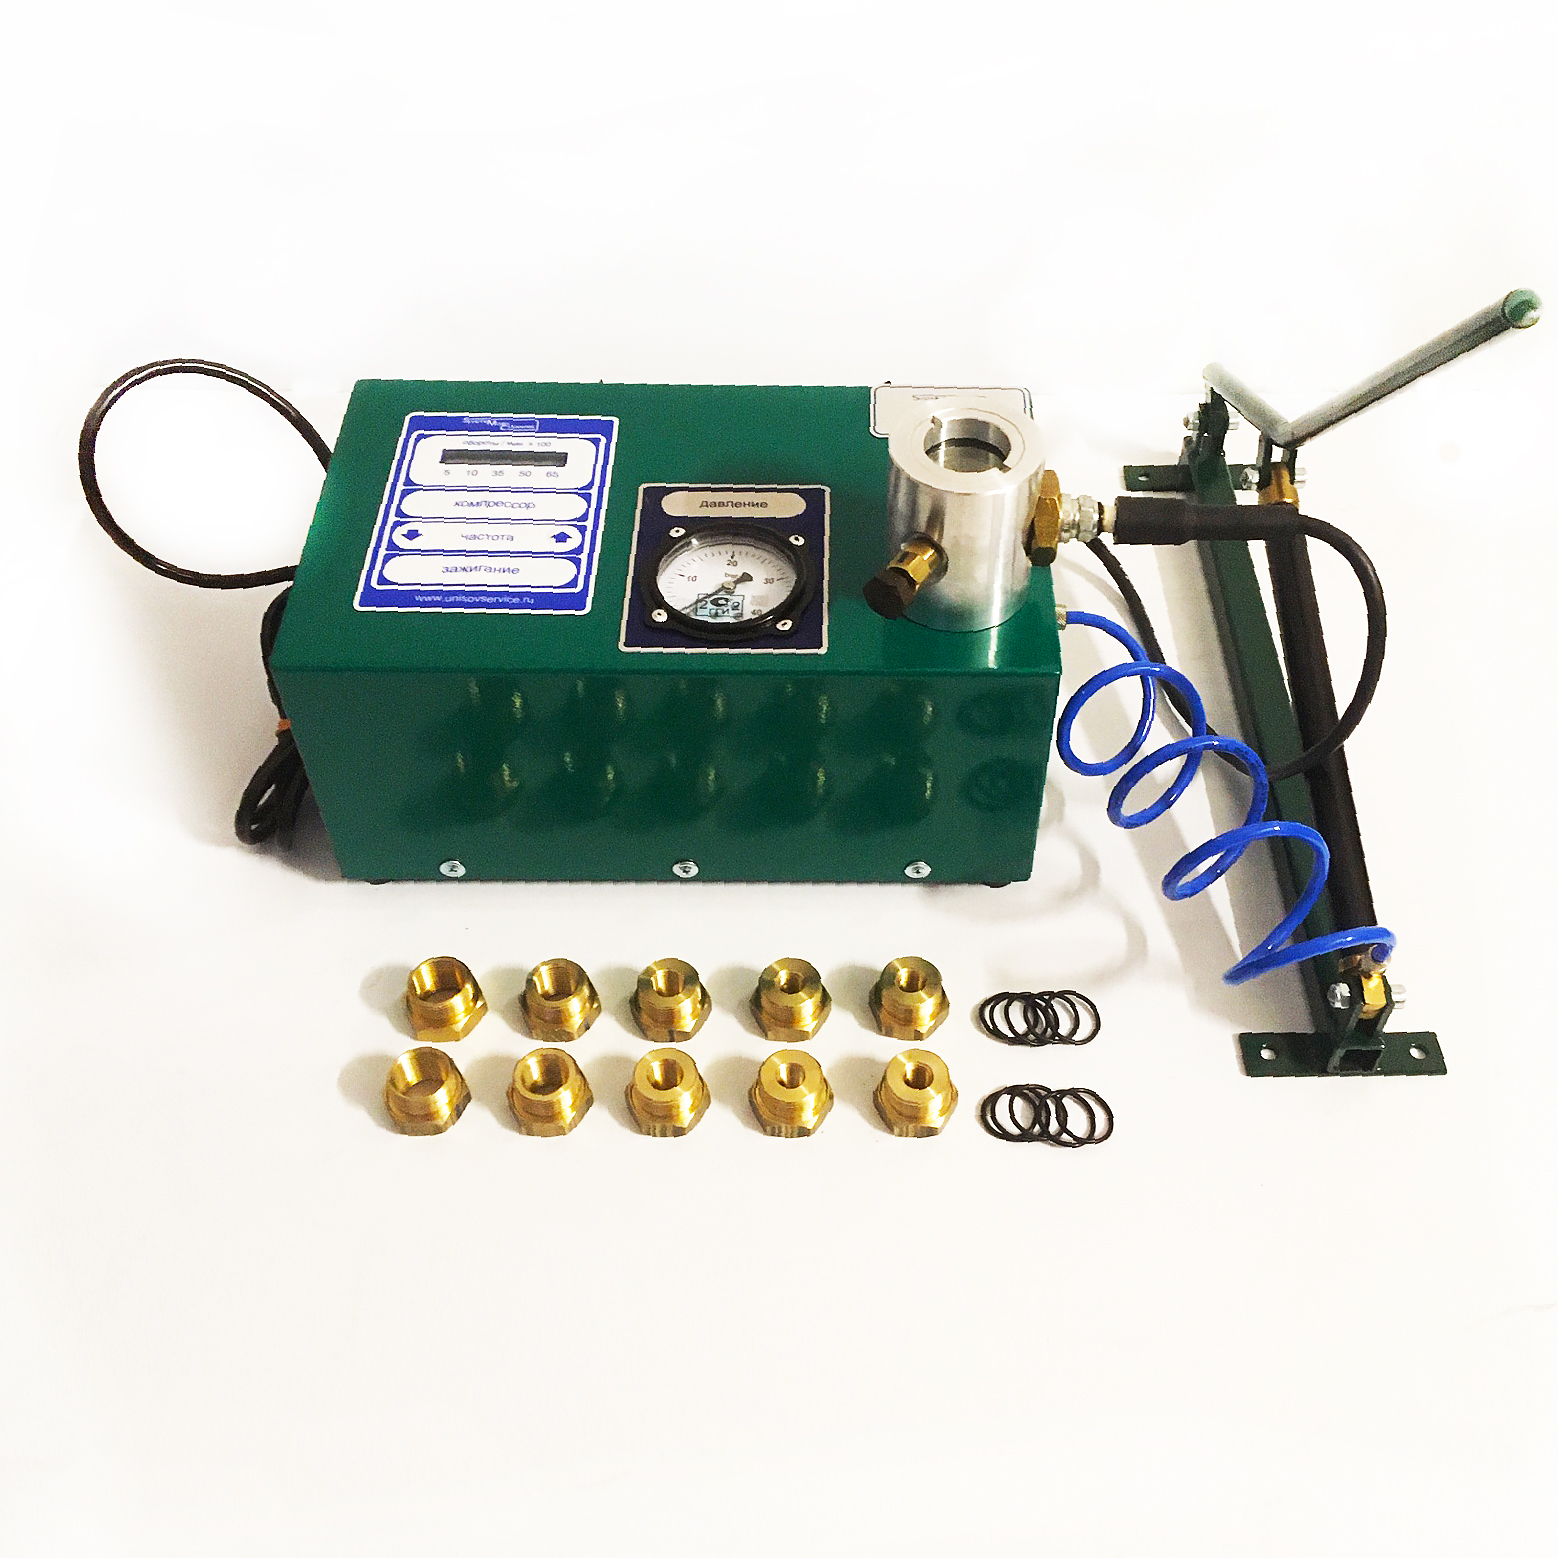 SMC-500M (AC220v) -Стенд для диагностики свечей зажигания газопоршневых двигателей (мод:500.45)